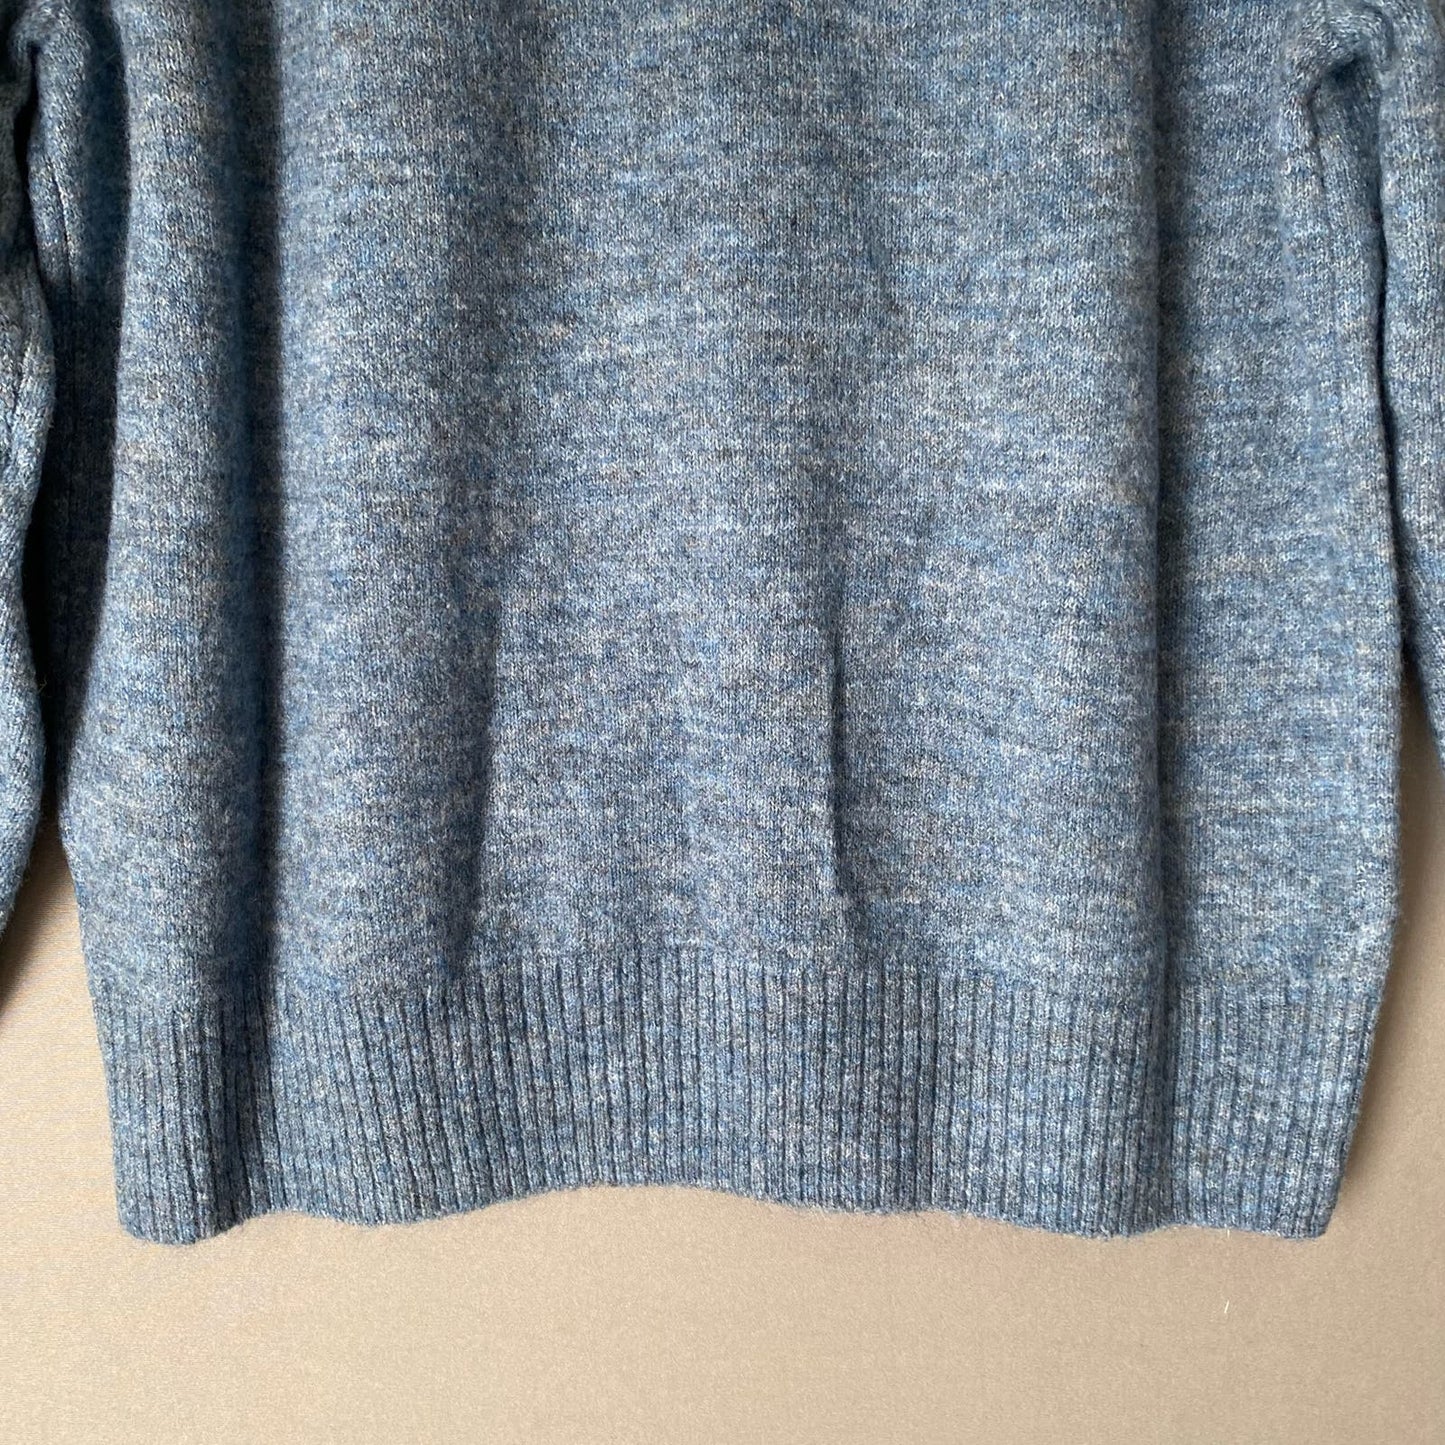 Gap sz XS cowel neck knit sweater NWT